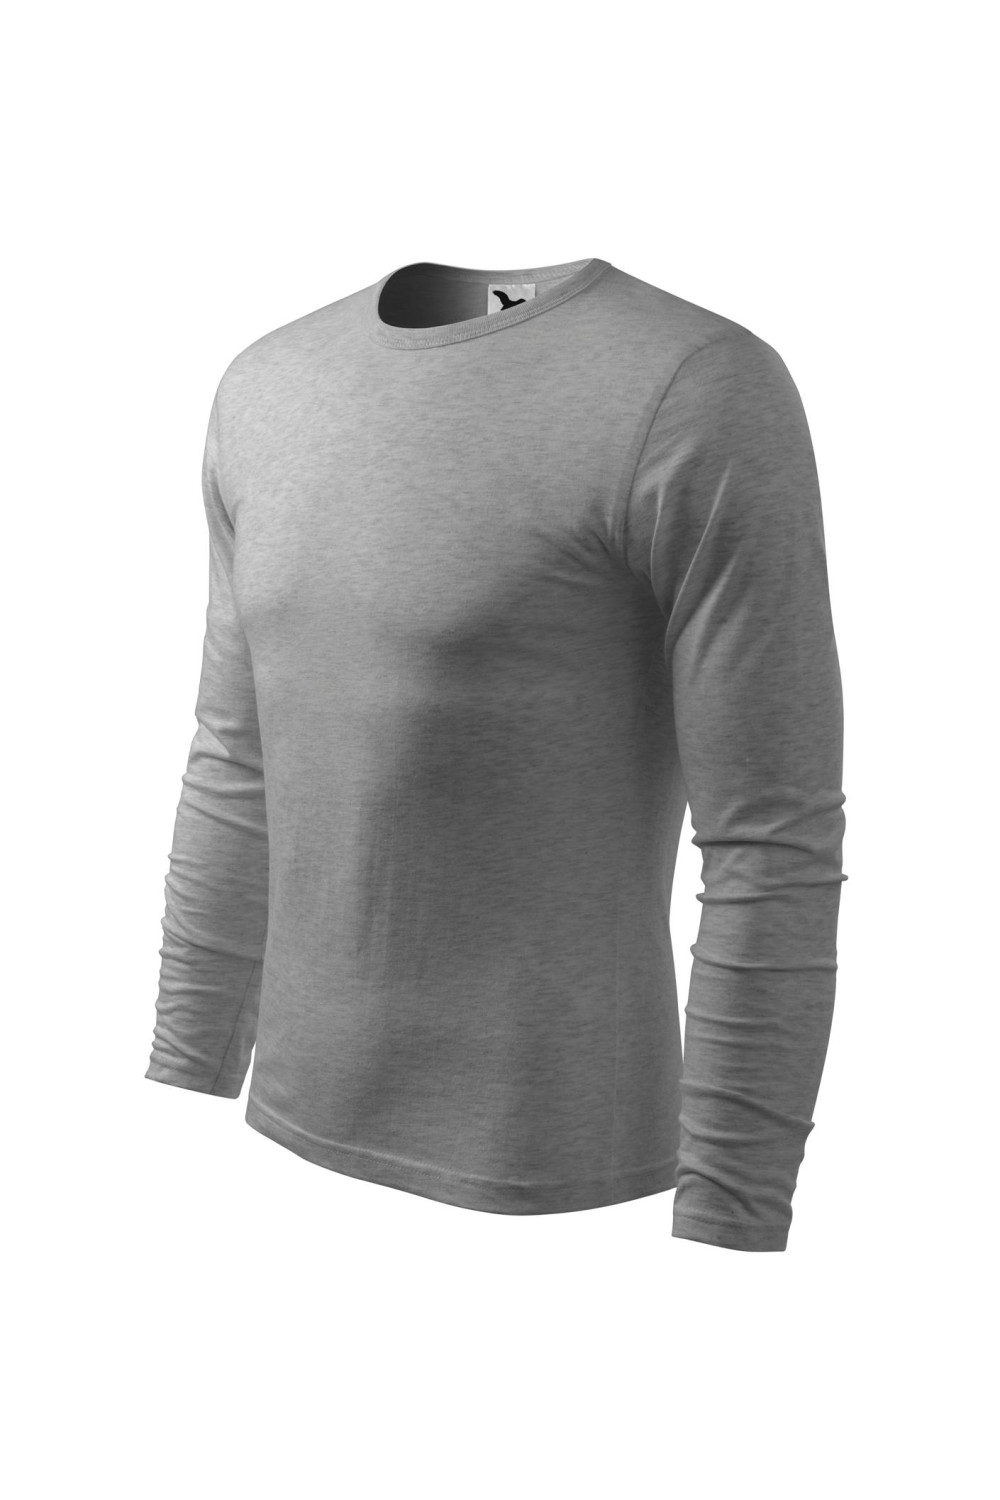 FIT-T LS 119 MALFINI ADLER Koszulka męska fitness z długim rękawem 100% bawełna ciemnoszary melanż